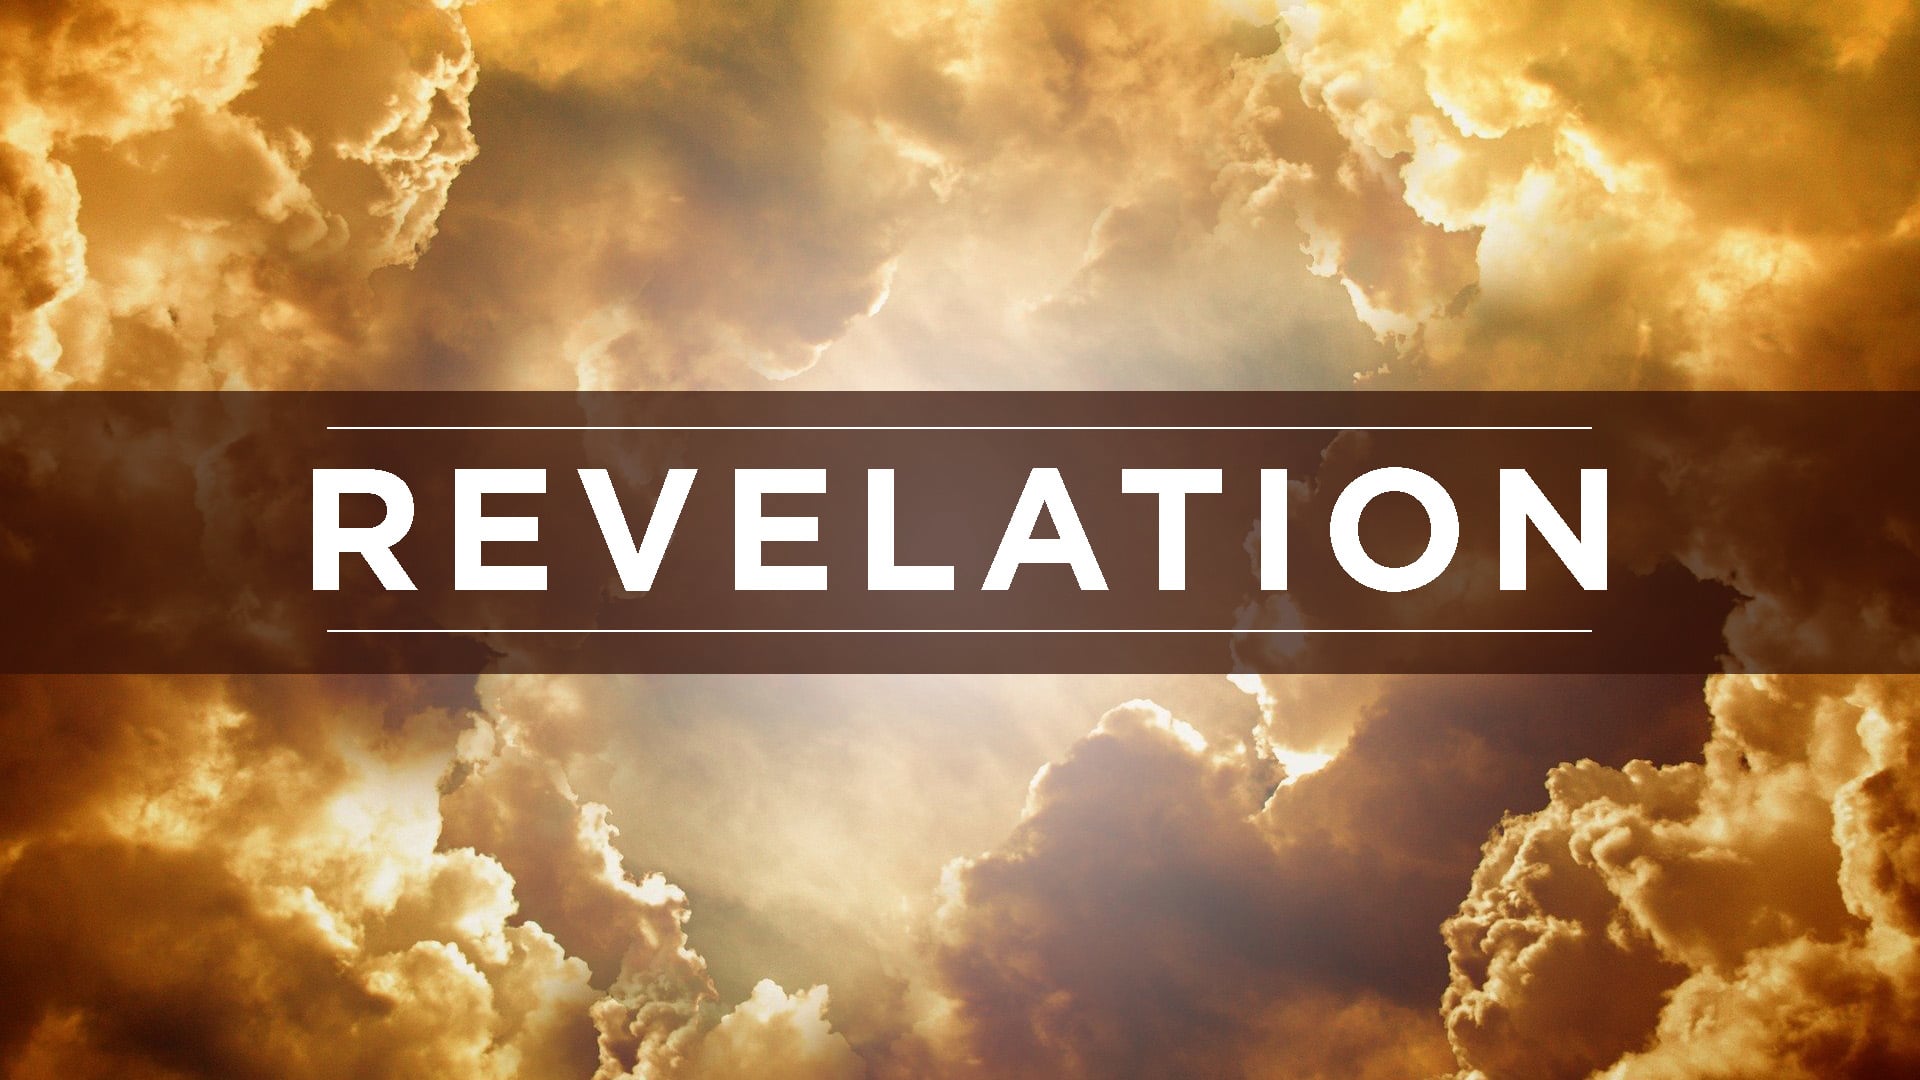 Revelation Chapter 20